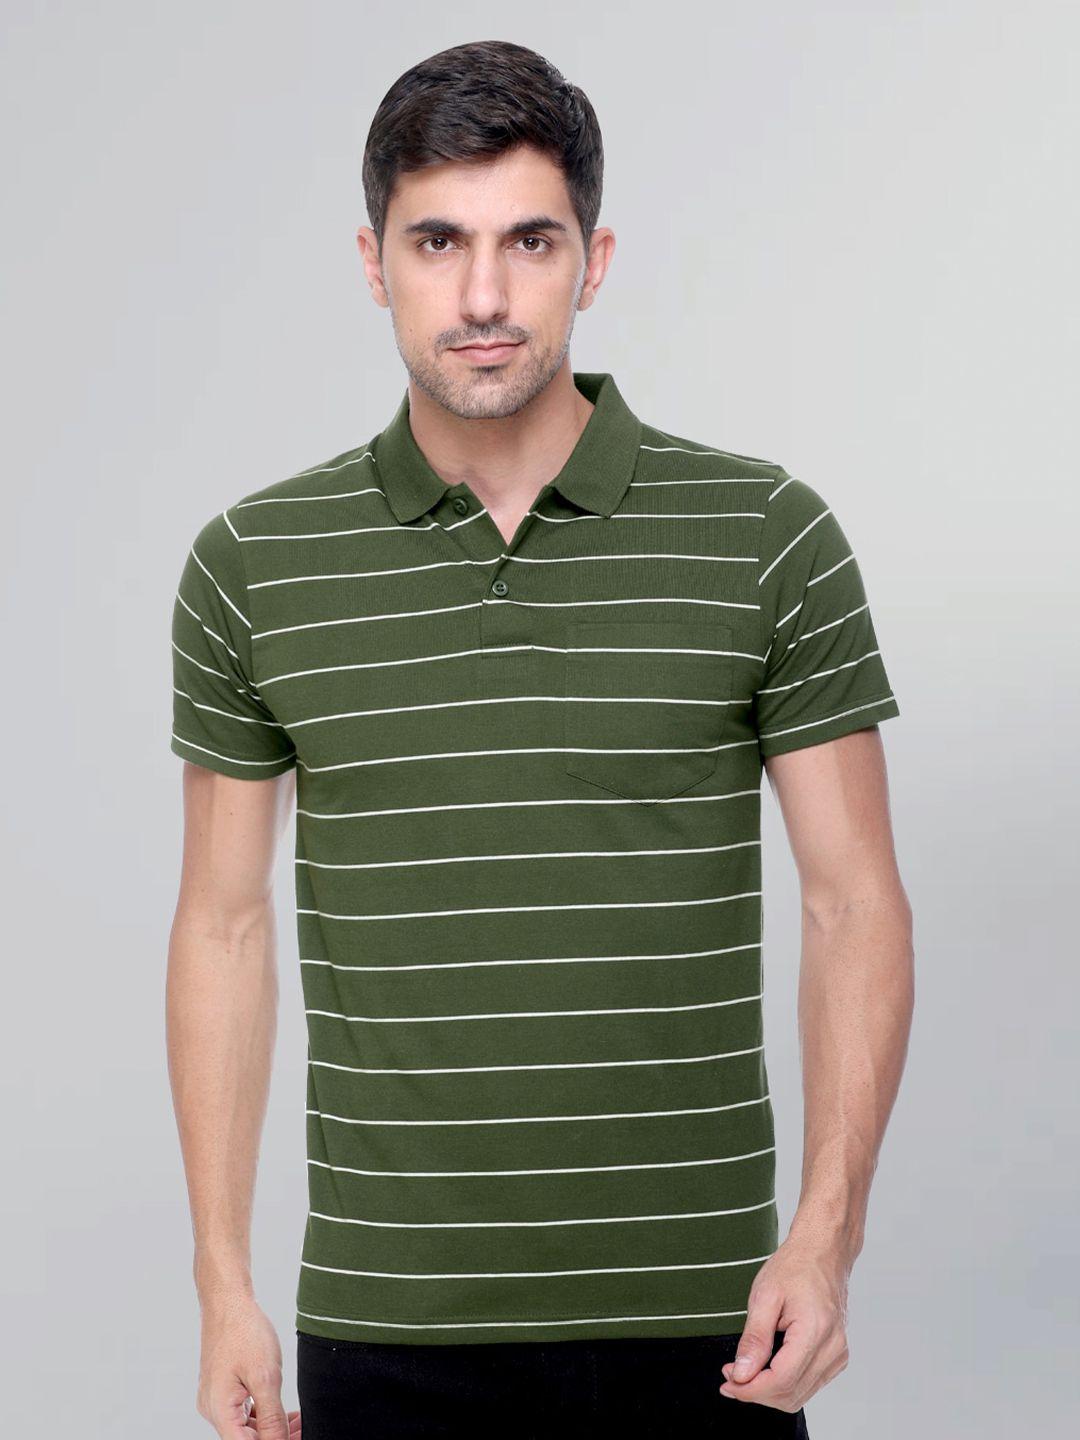 godfrey men striped polo collar cotton t-shirt